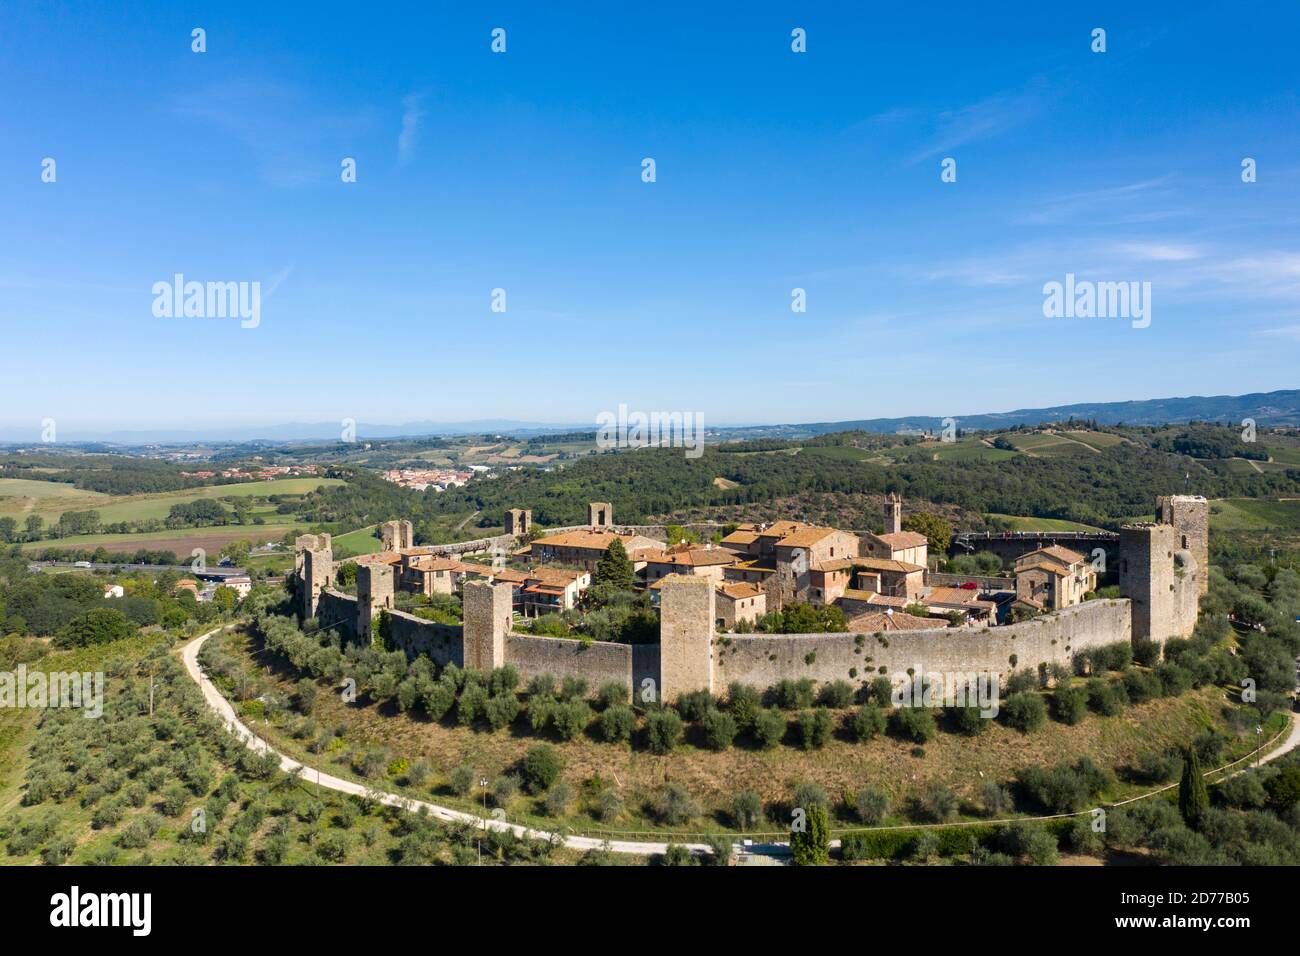 Les murs fortifiés circulaires de Monteriggioni, un village perché en Toscane, en Italie Banque D'Images